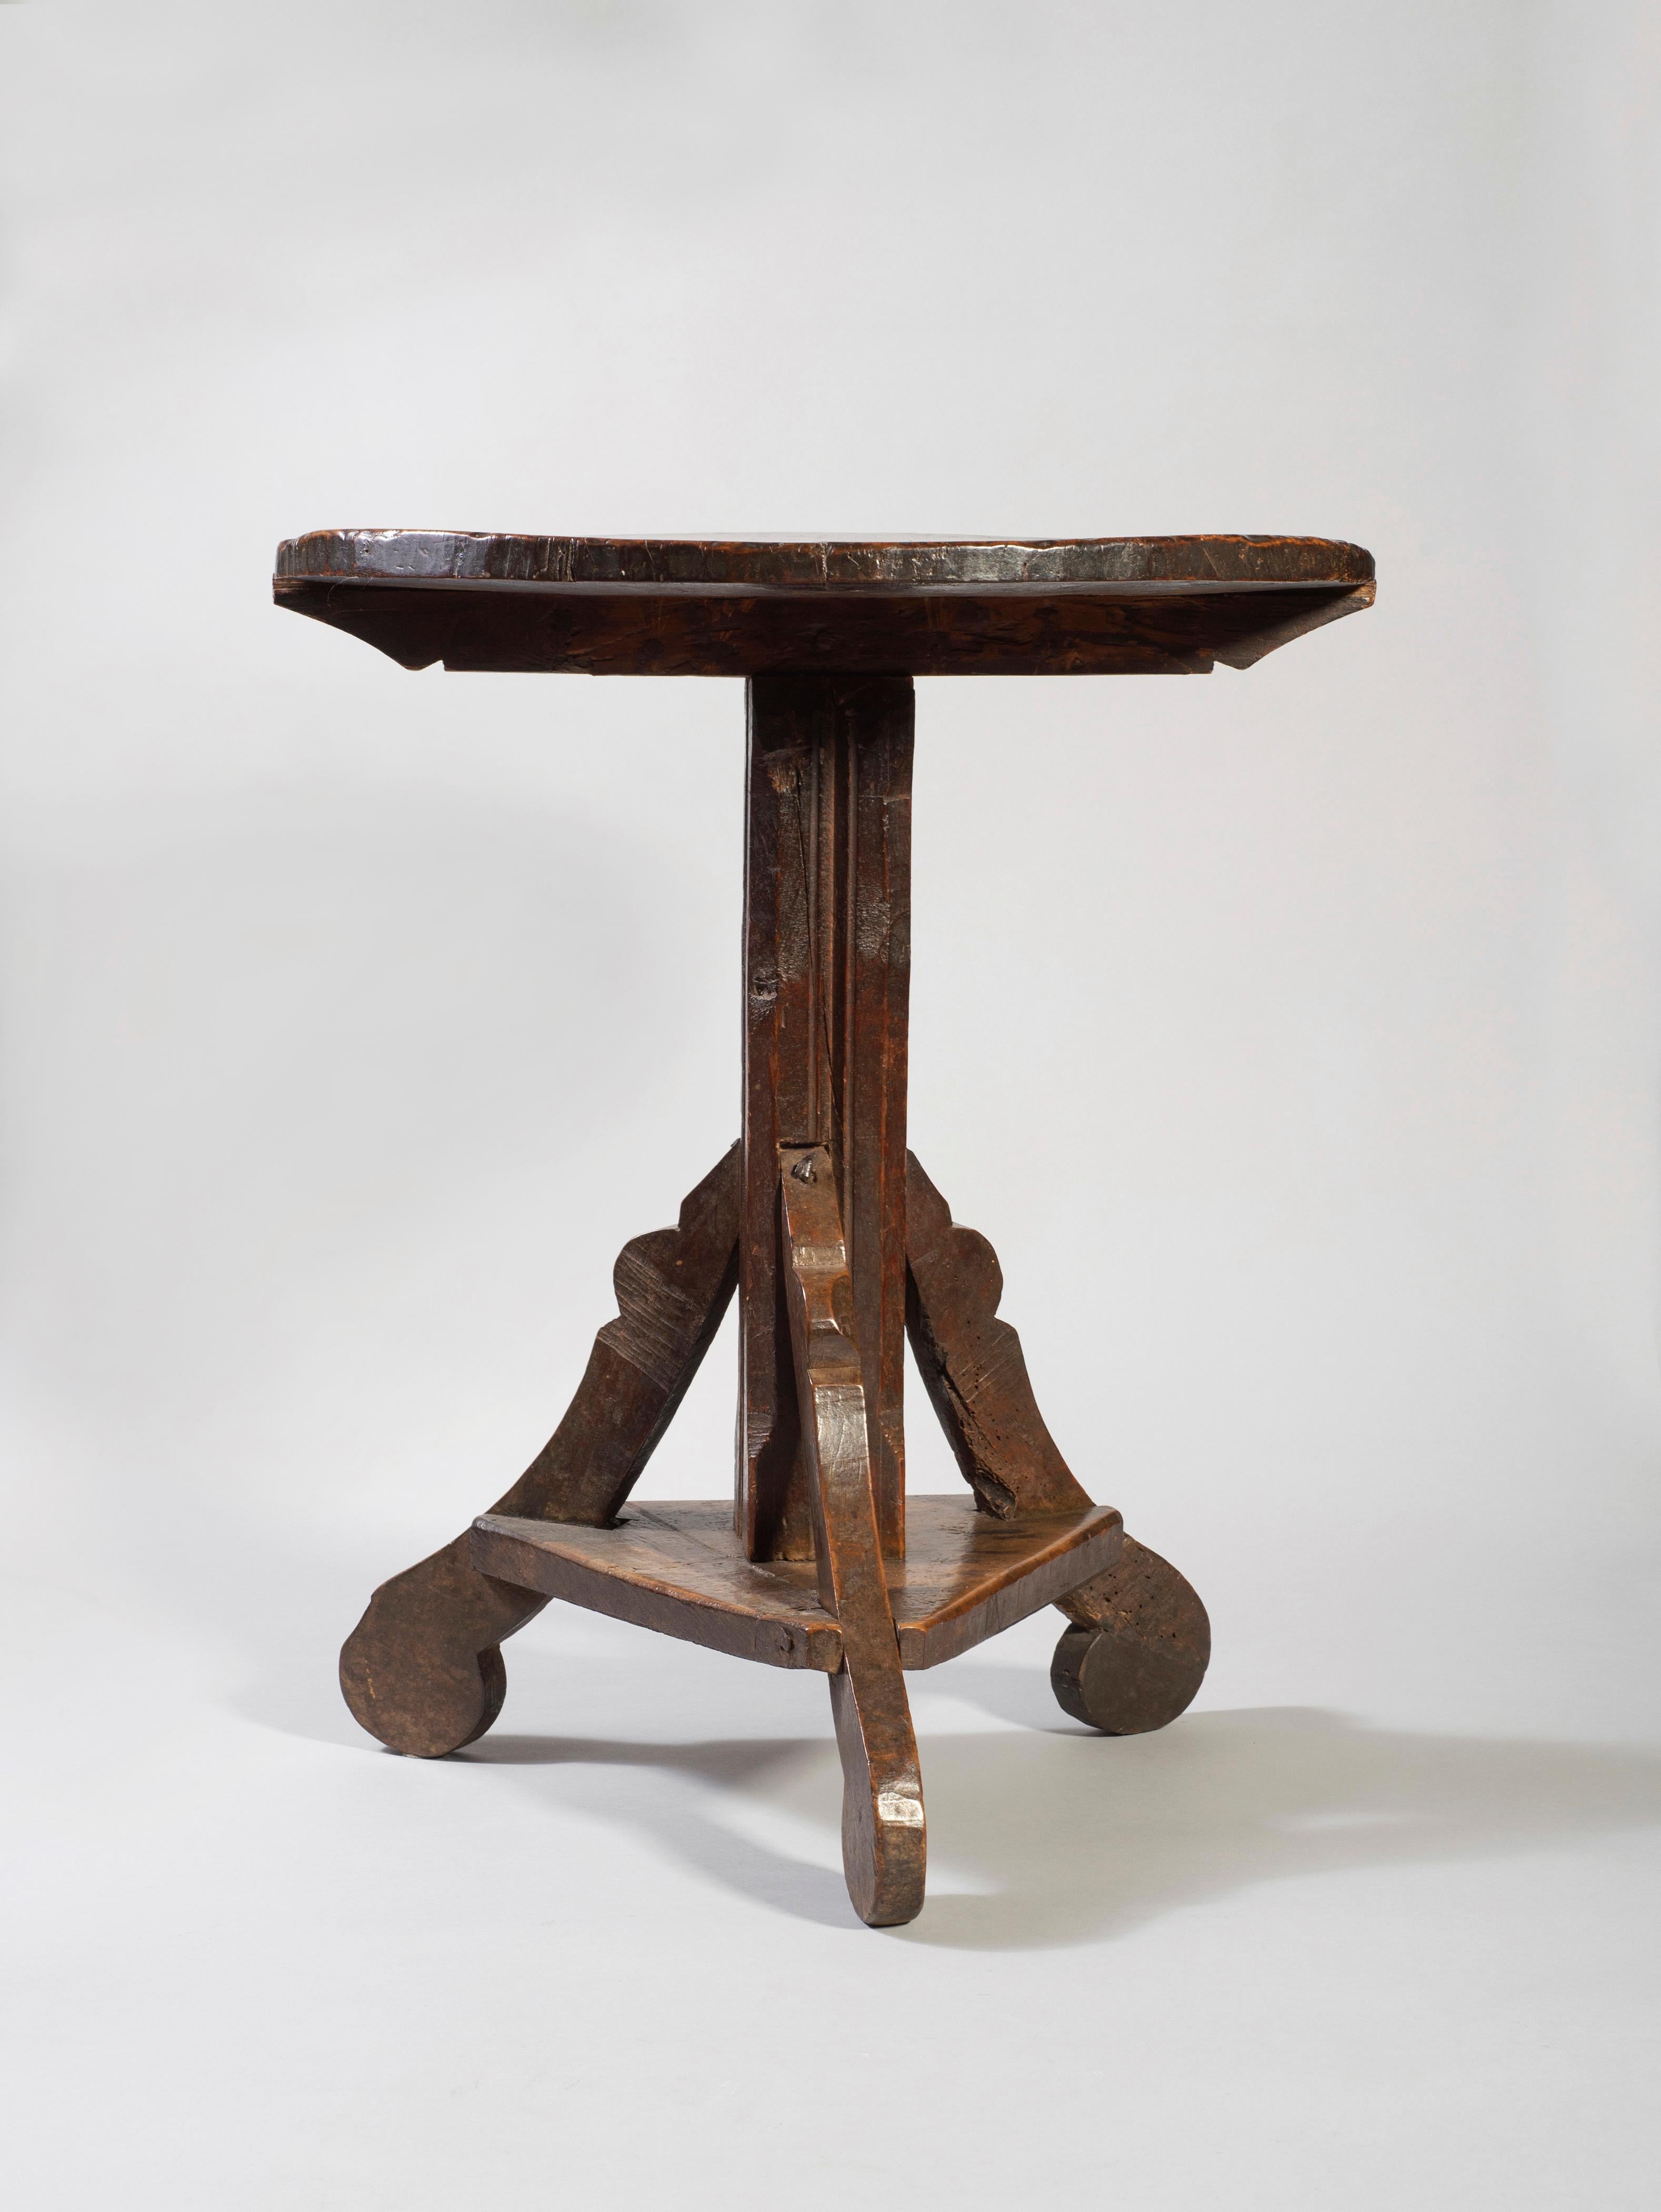 Runder Nusstisch, Lombardei, 16. Jahrhundert

Er steht mit drei leicht ausgefransten Füßen, die in einer runden Form enden, auf dem Boden.

Sie werden in einen dreieckigen Sockel eingesetzt, der sie an Ort und Stelle hält, und mit Nägeln an dem